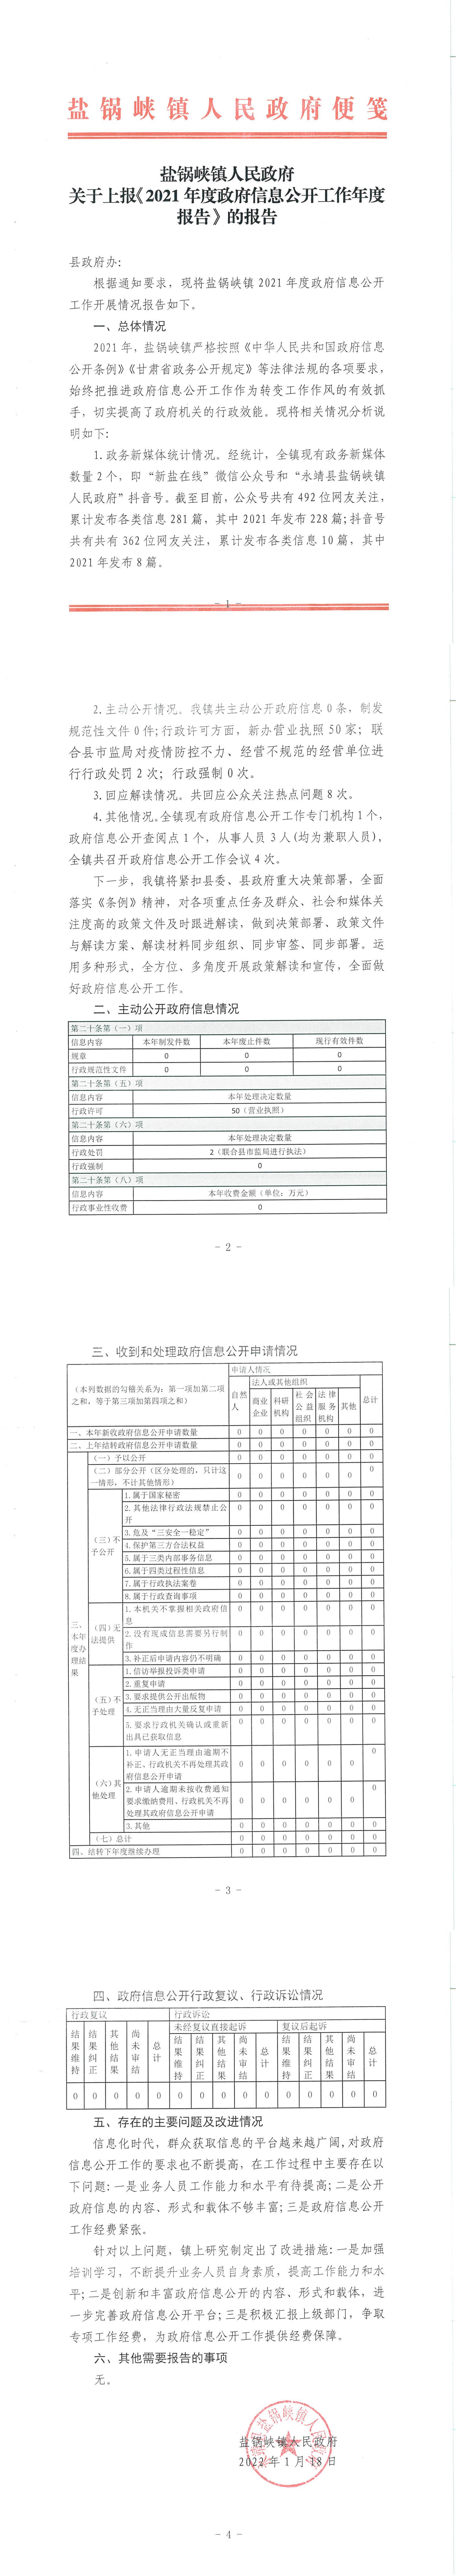 2021年度盐锅峡镇政府信息公开工作报告.jpg